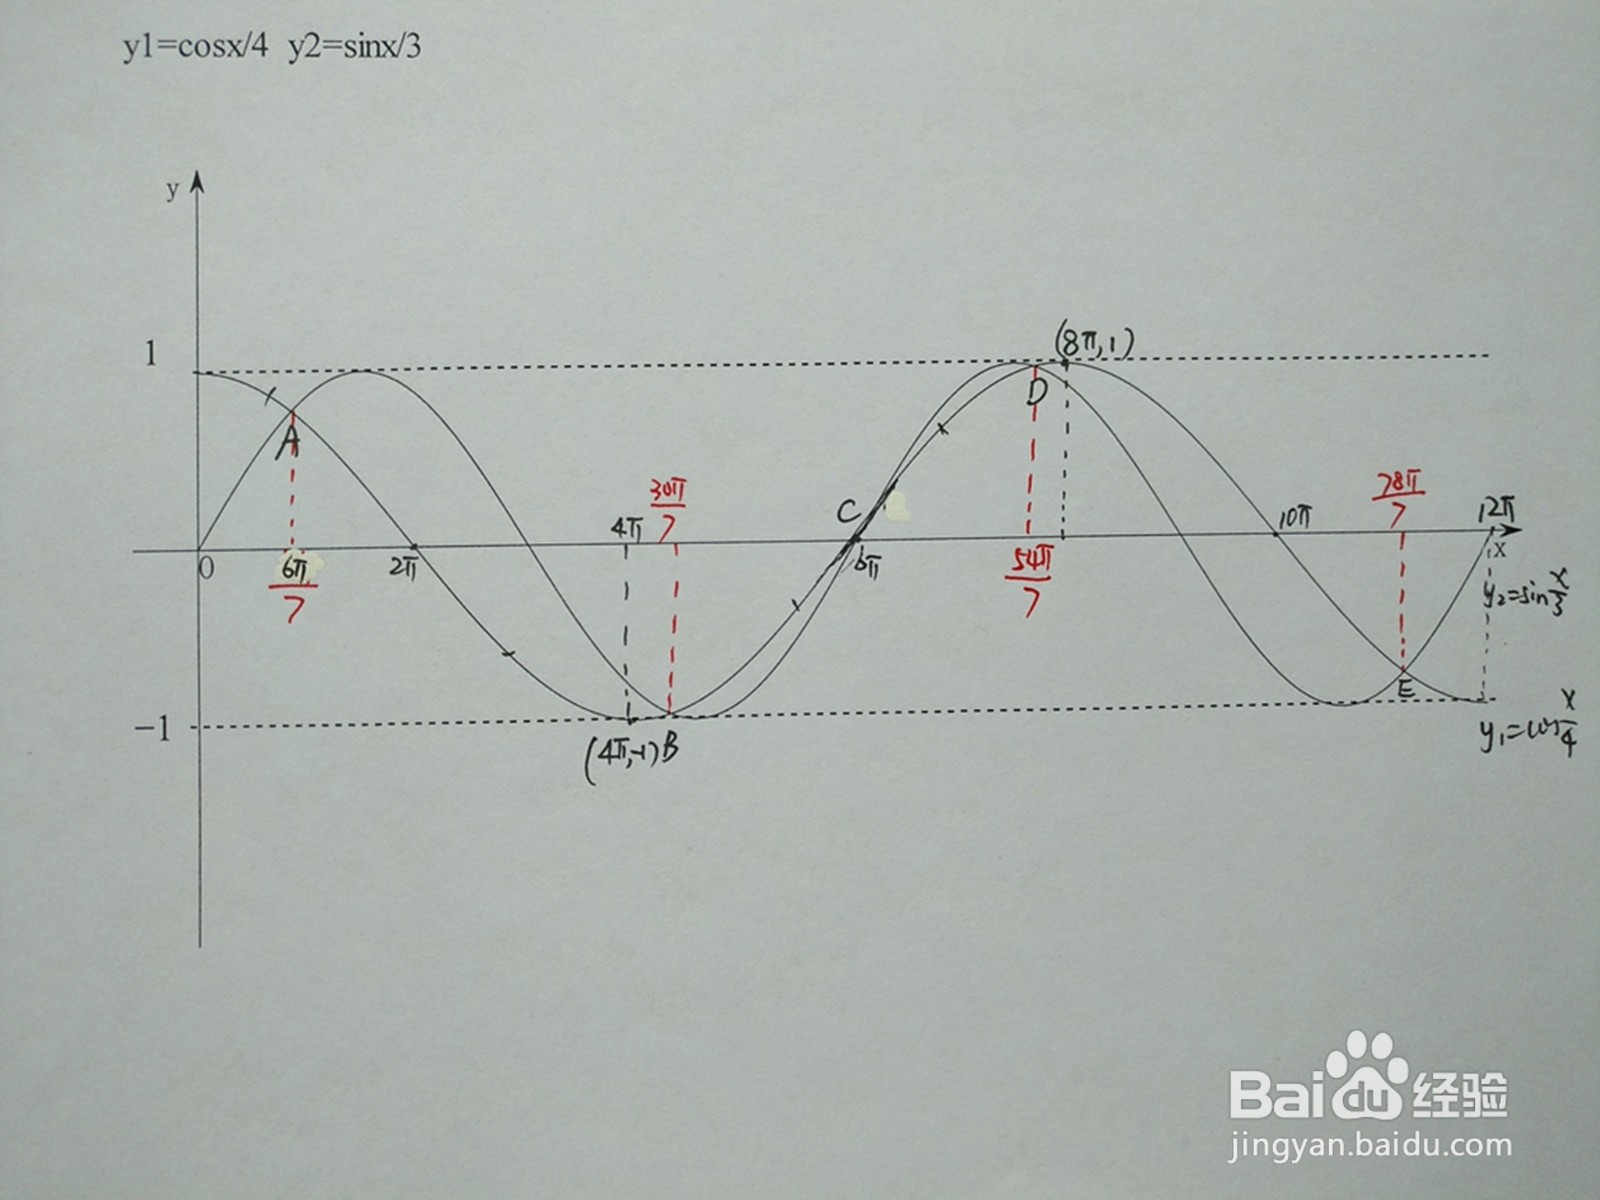 <b>三角函数y1=cosx/4与y2=sinx/3的交点计算</b>